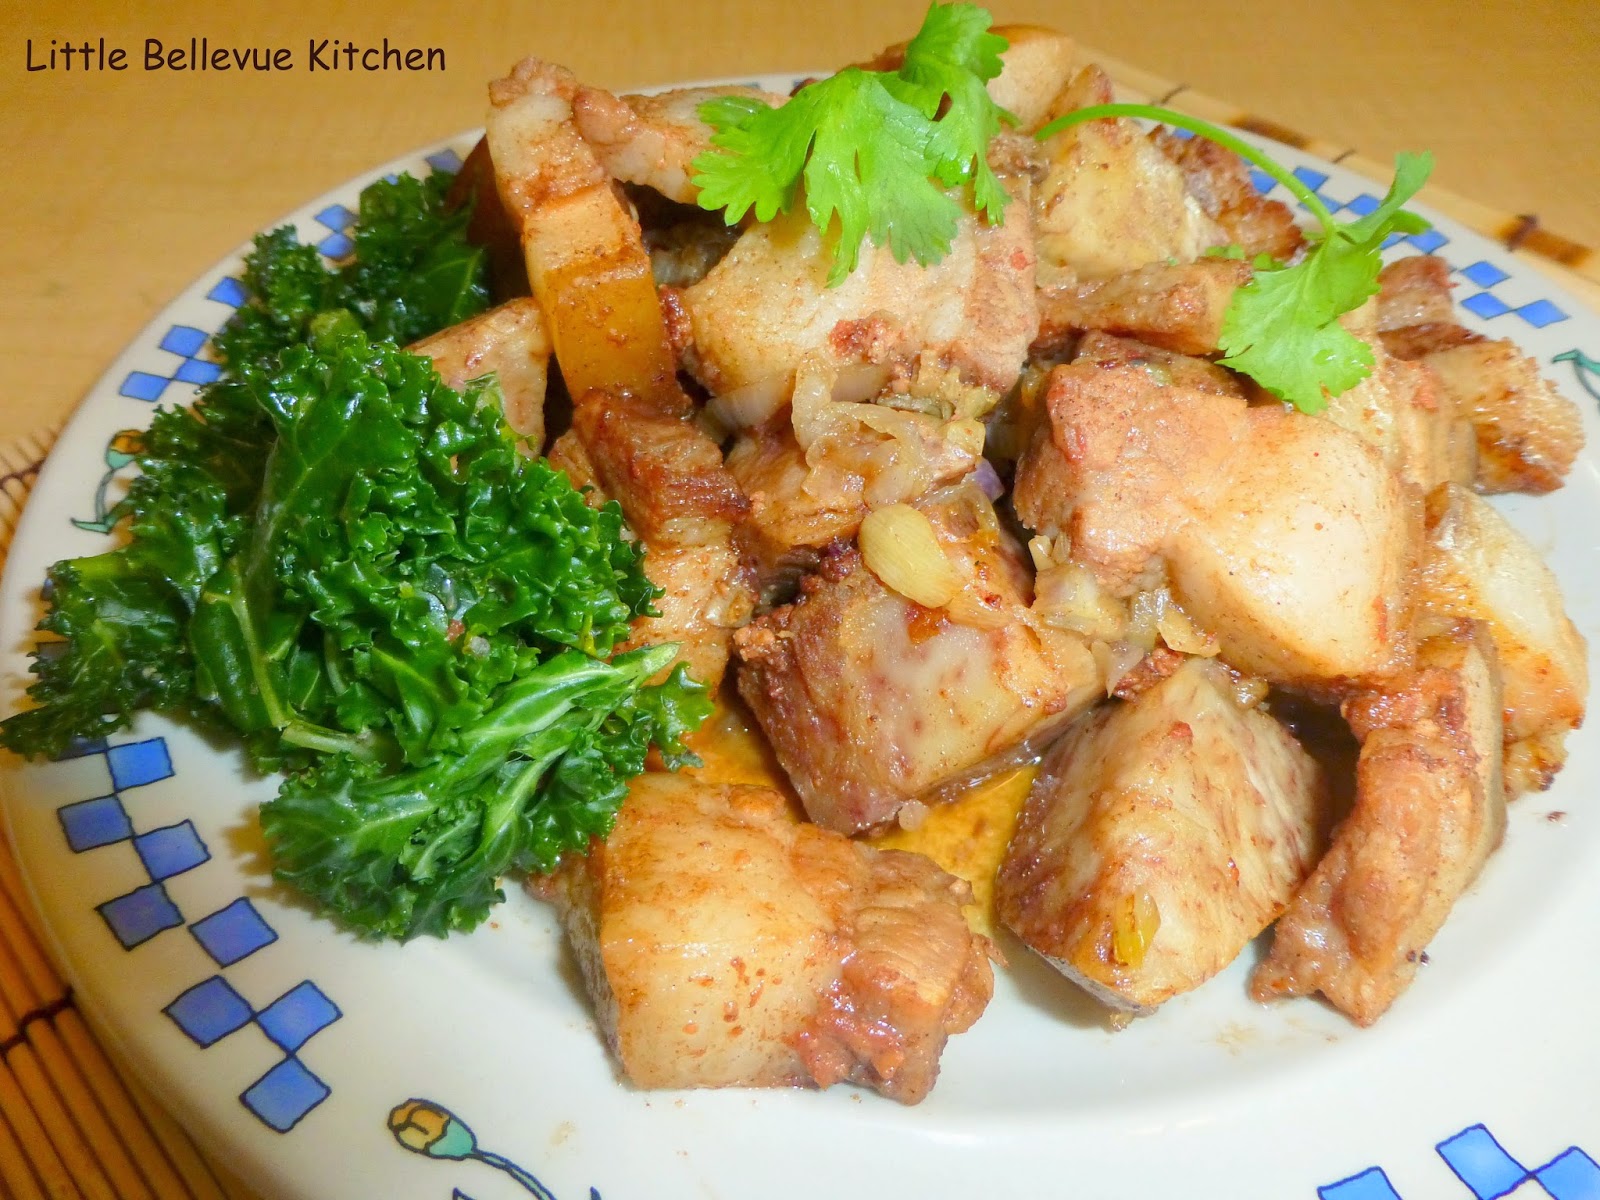 Little Bellevue Kitchen: Steamed Pork Belly with Taro/Yam